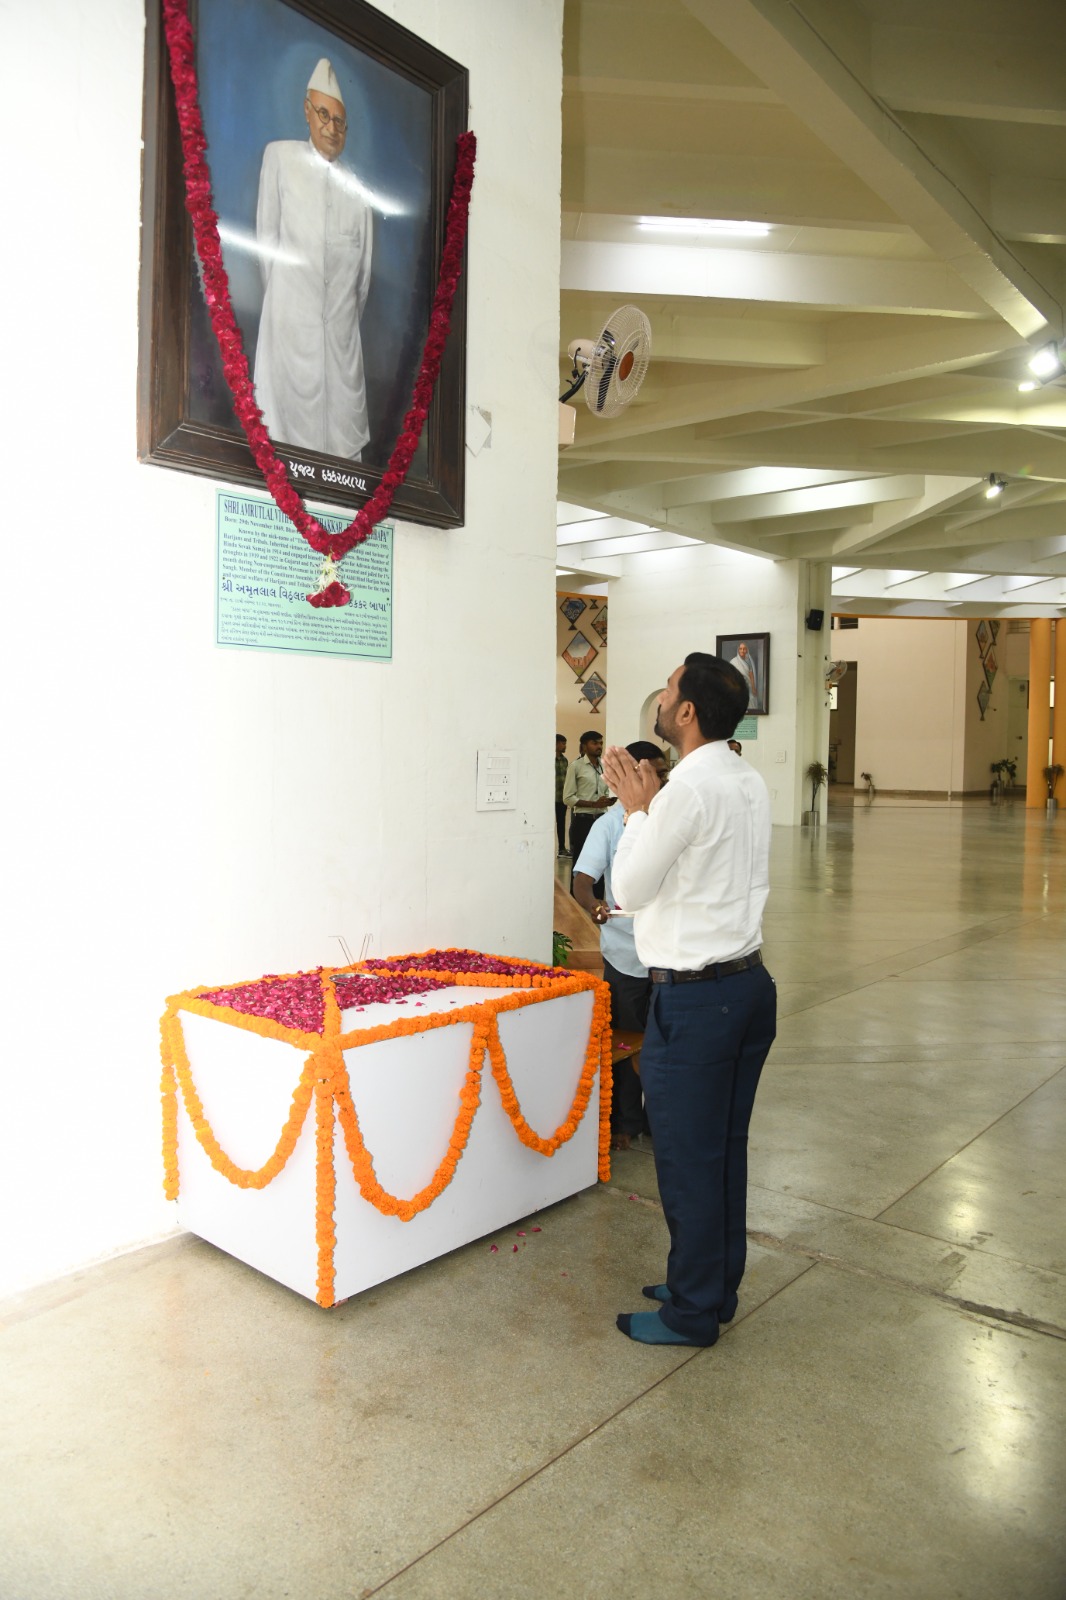 ઠક્કરબાપાની ૧૫૪મી જન્મજયંતી : ગુજરાત વિધાનસભા પોડિયમ ખાતે કૃષિ મંત્રી રાઘવજી પટેલે પુષ્પાંજલિ અર્પણ કરી